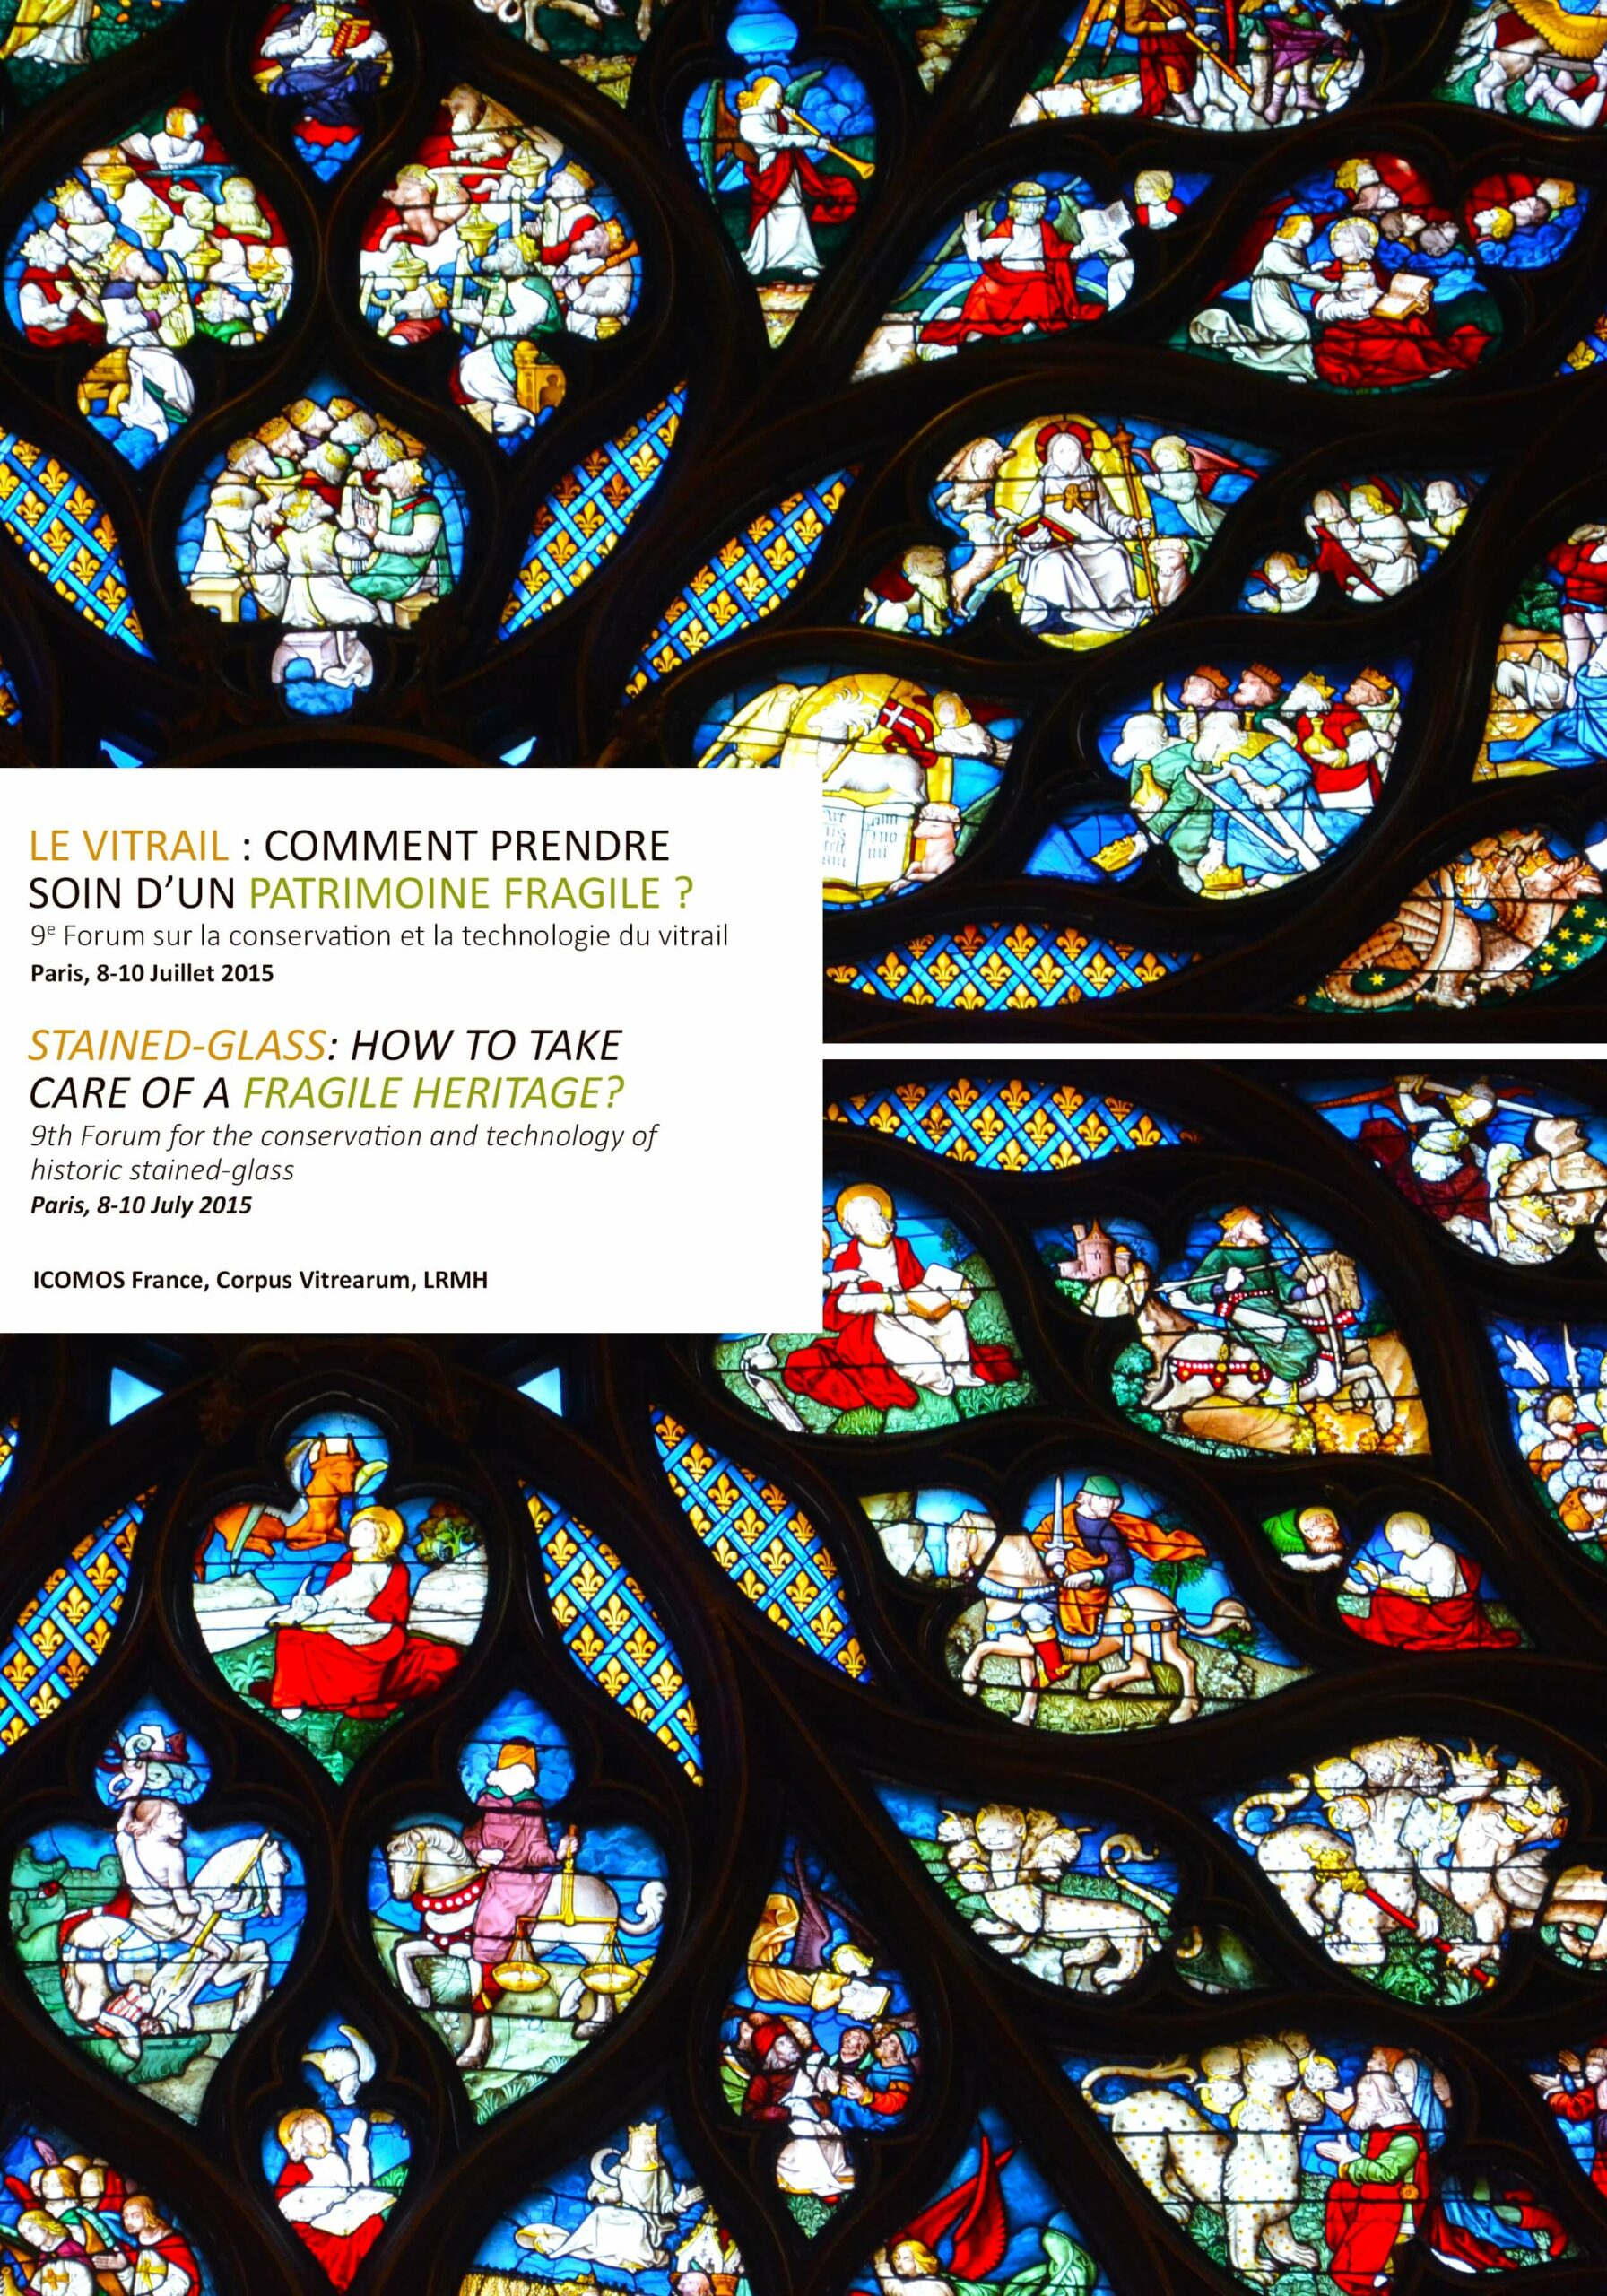 Couverture de la publication : Le vitrail : comment prendre soin d'un patrimoine fragile ?